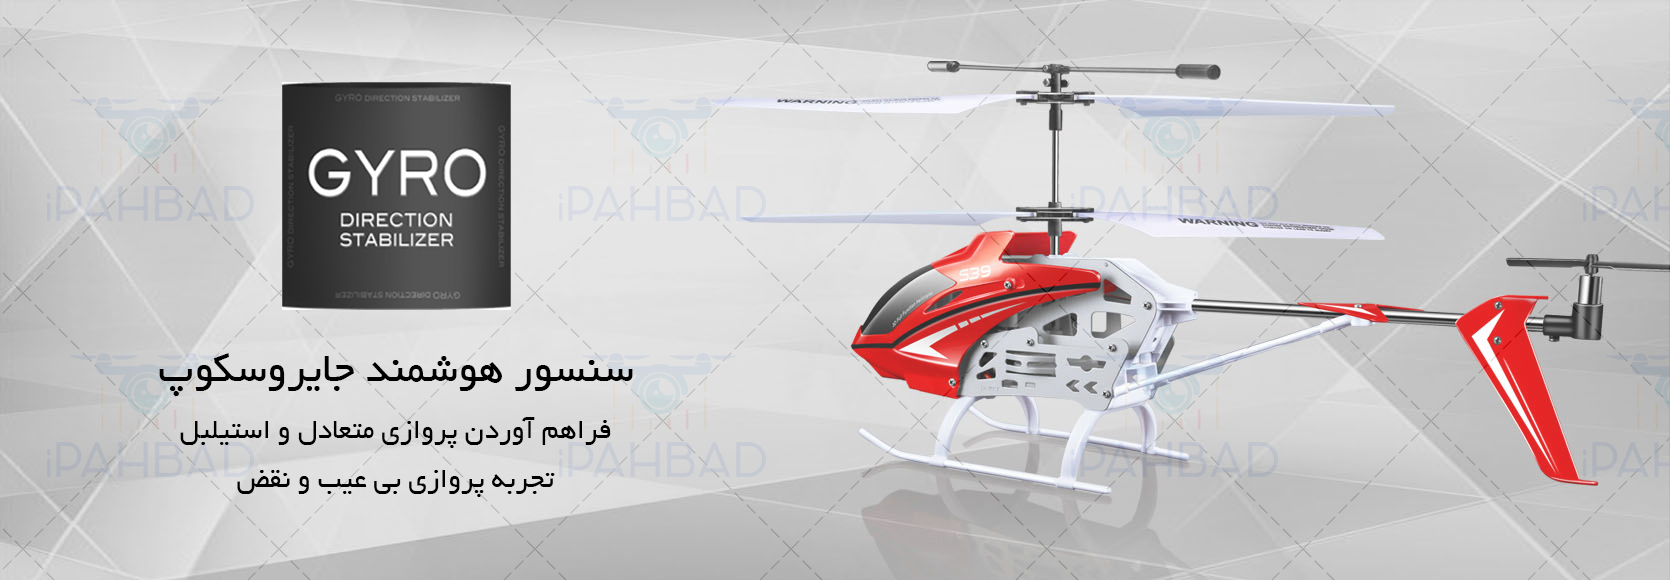 قیمت خرید هلیکوپتر کنترلی سایما Syma S39 یک هلی کوپتر کنترلی سایز بزرگ و محبوب از کمپانی syma برای پرواز در محیط های خارجی و داخلی